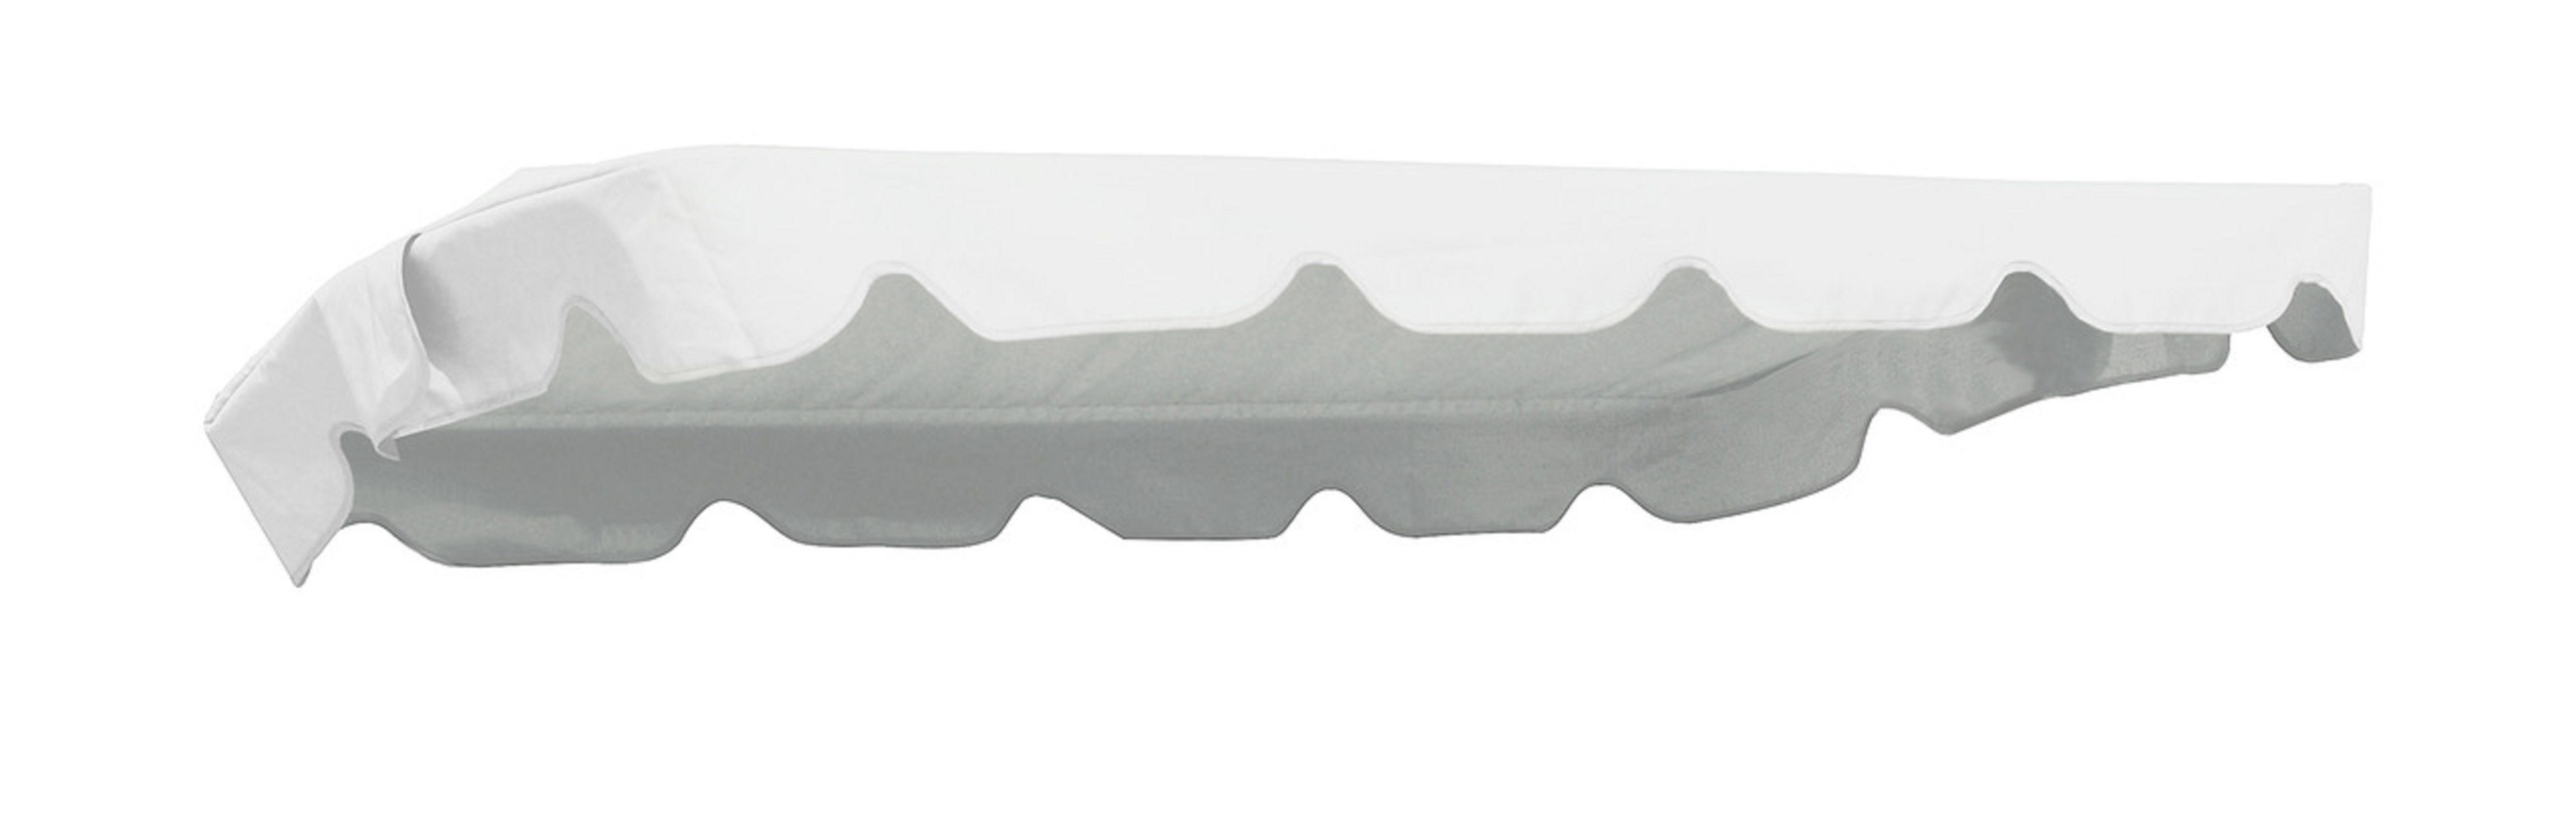 MFG Hollywoodschaukelersatzdach 200 x 134 cm (Taschenmaß 195 x 130 cm), weiß, PVC-Gewebe